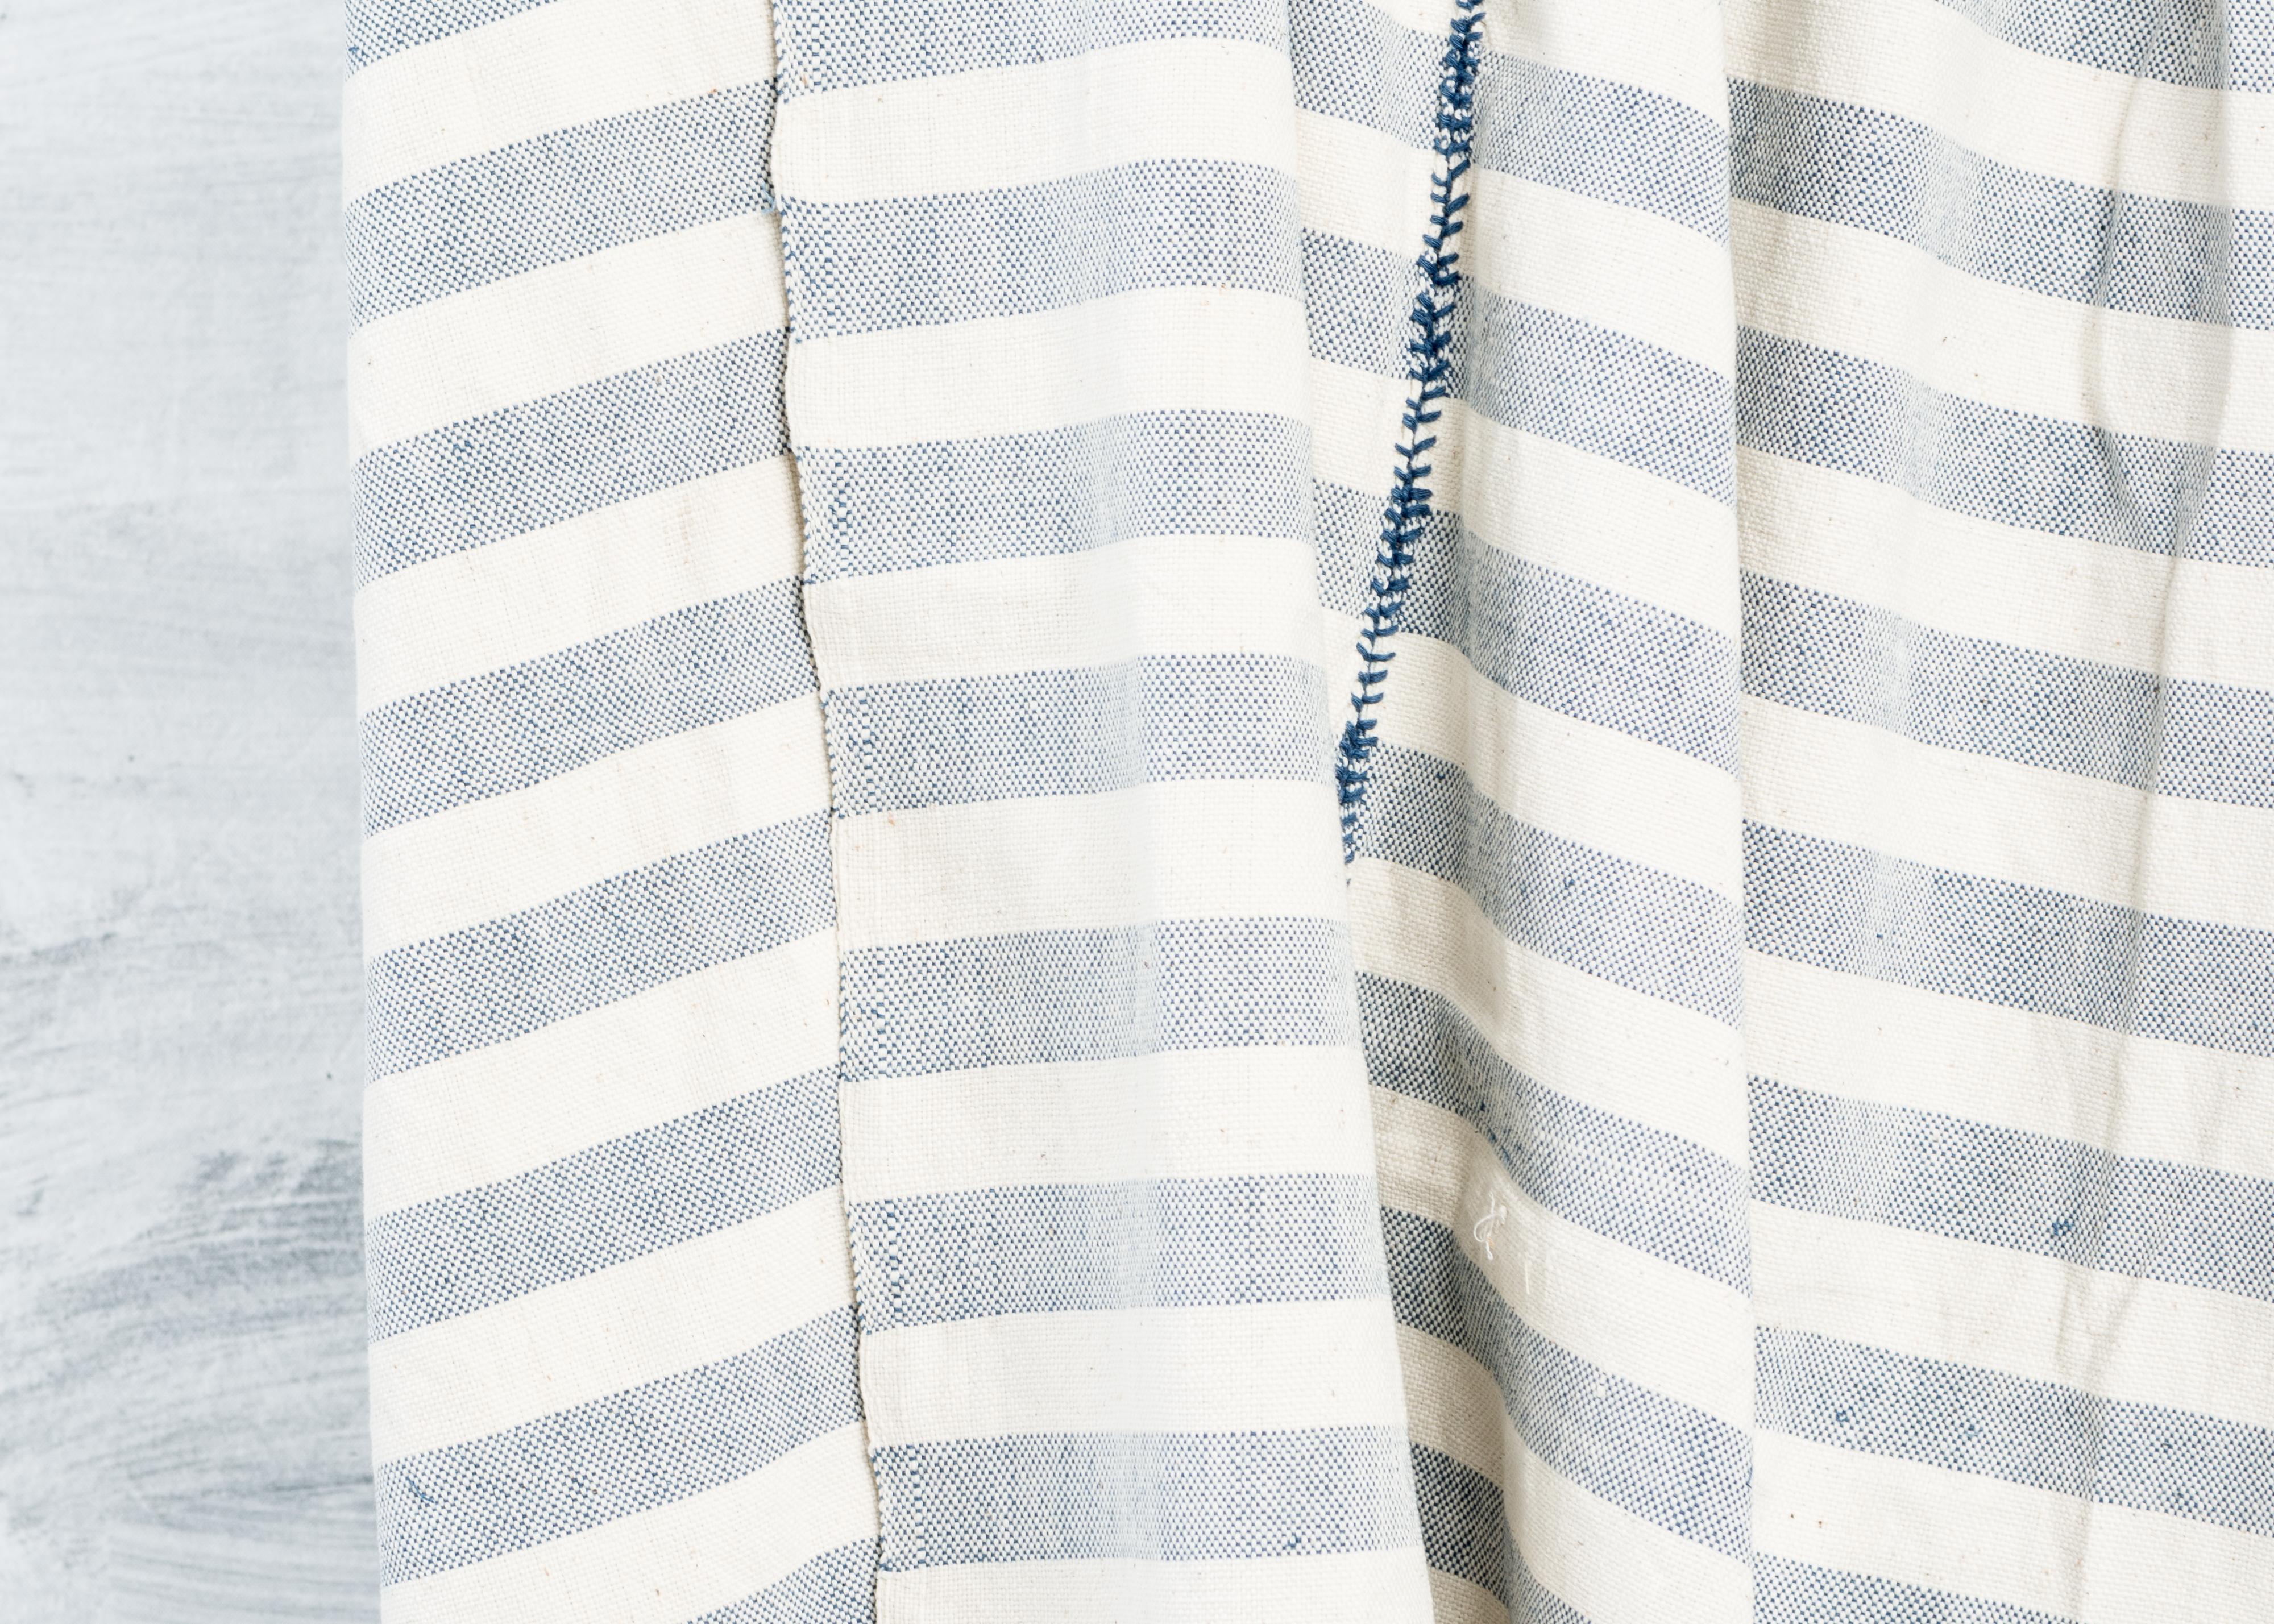 Yarn AARI Handloom Indigo Stripes Pattern Throw / Blanket in Organic Cotton